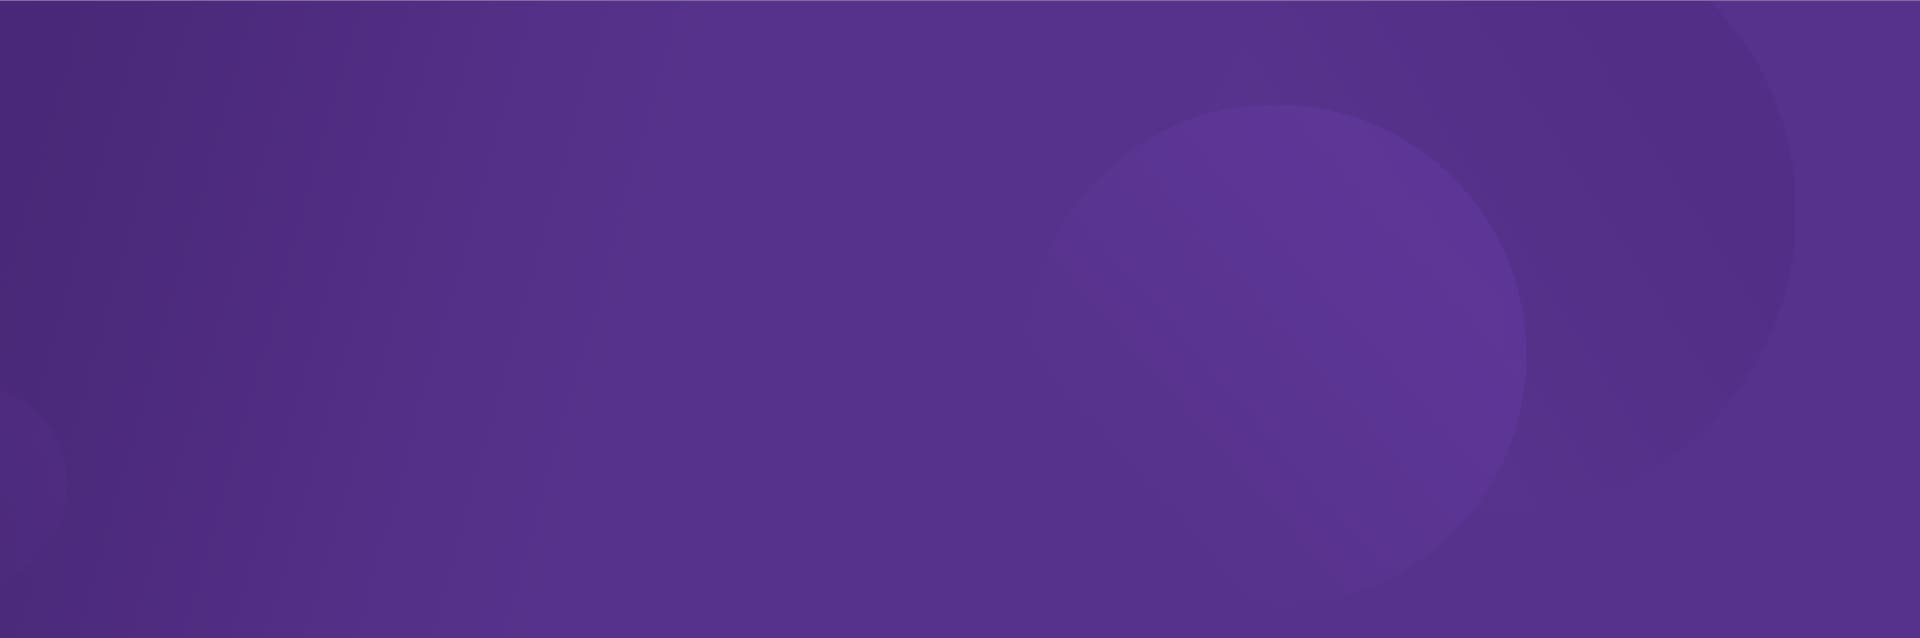 Purple News Background | Pretium Resourcing